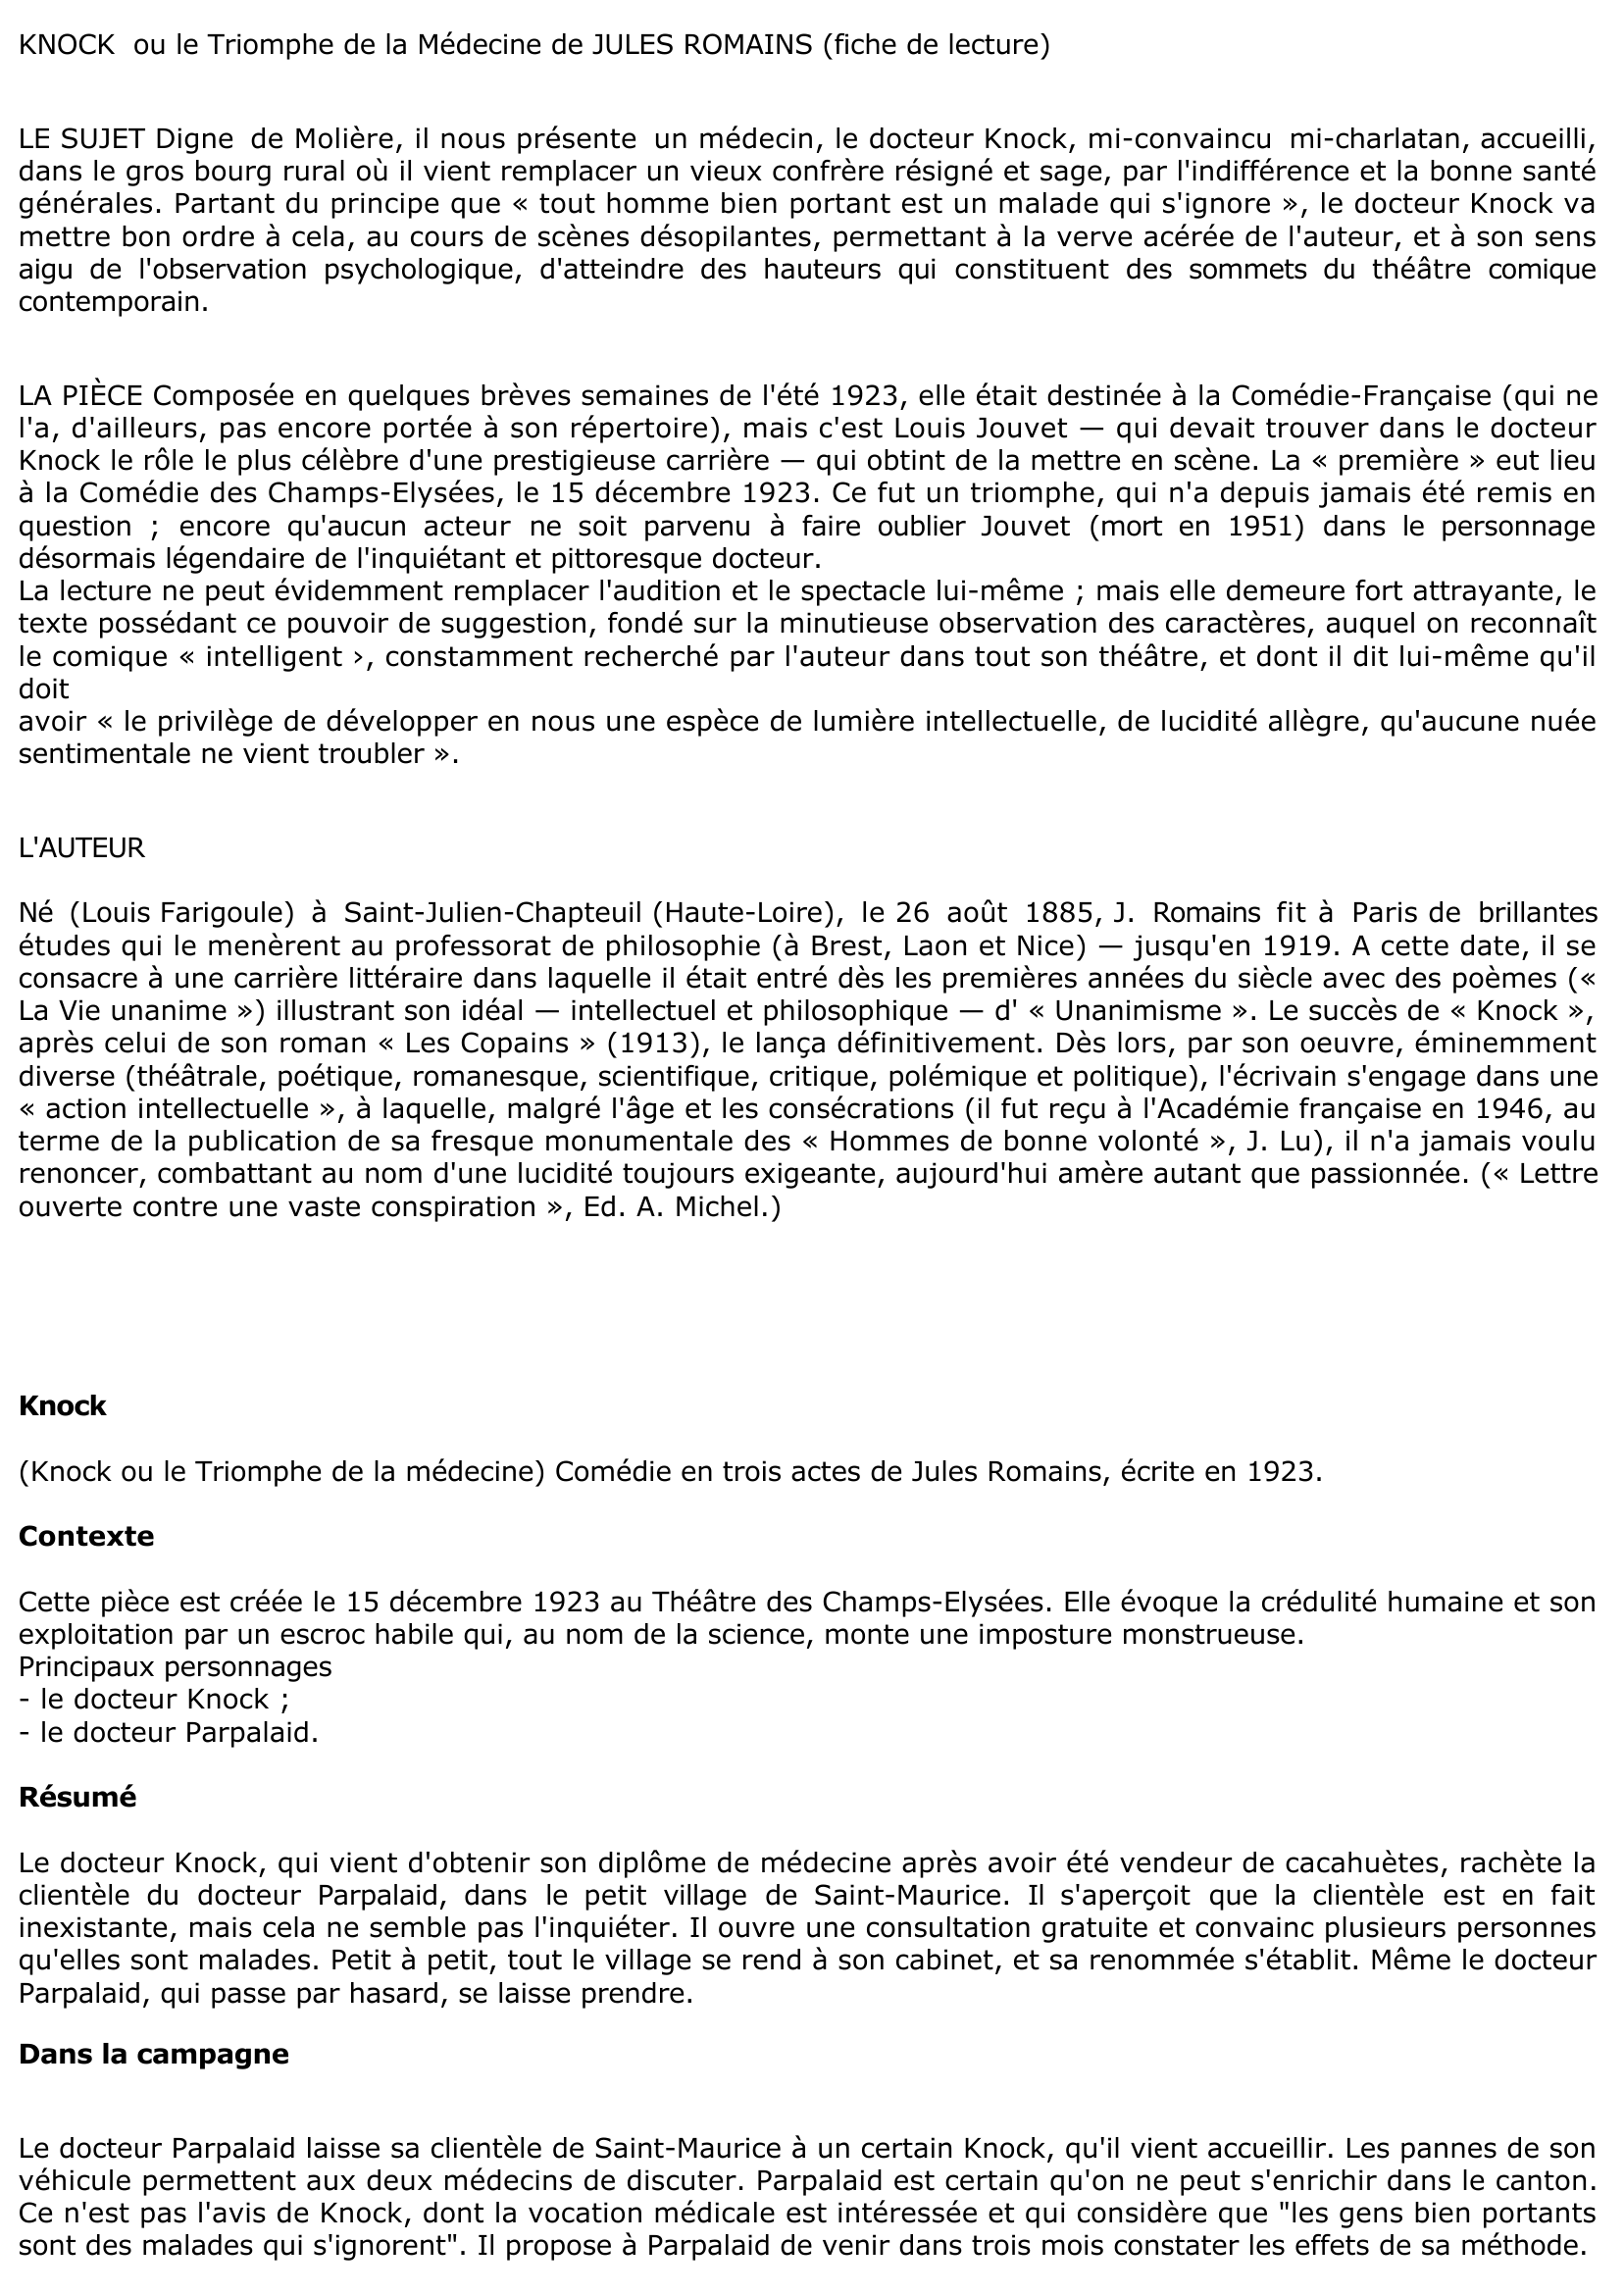 Prévisualisation du document KNOCK OU LE TRIOMPHE DE LA MÉDECINE de Jules Romains (résumé & analyse)